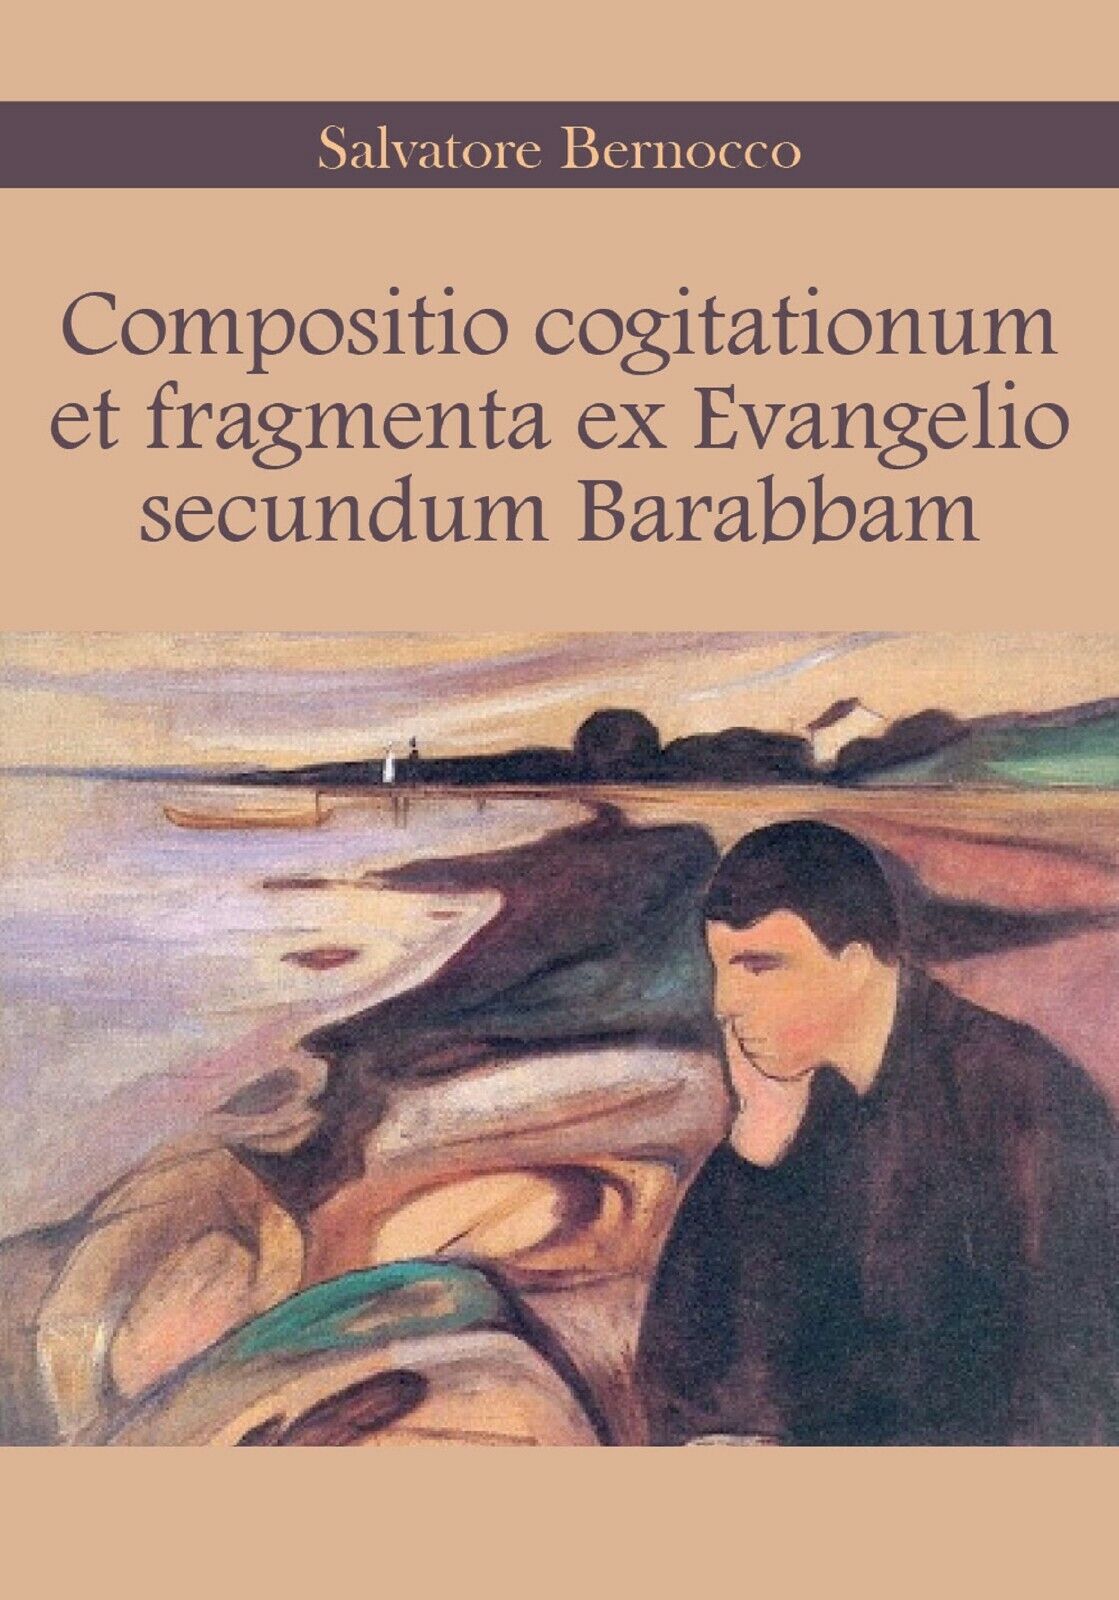 Compositio cogitationum et fragmenta ex Evangelio secundum Barabbam di Salvatore